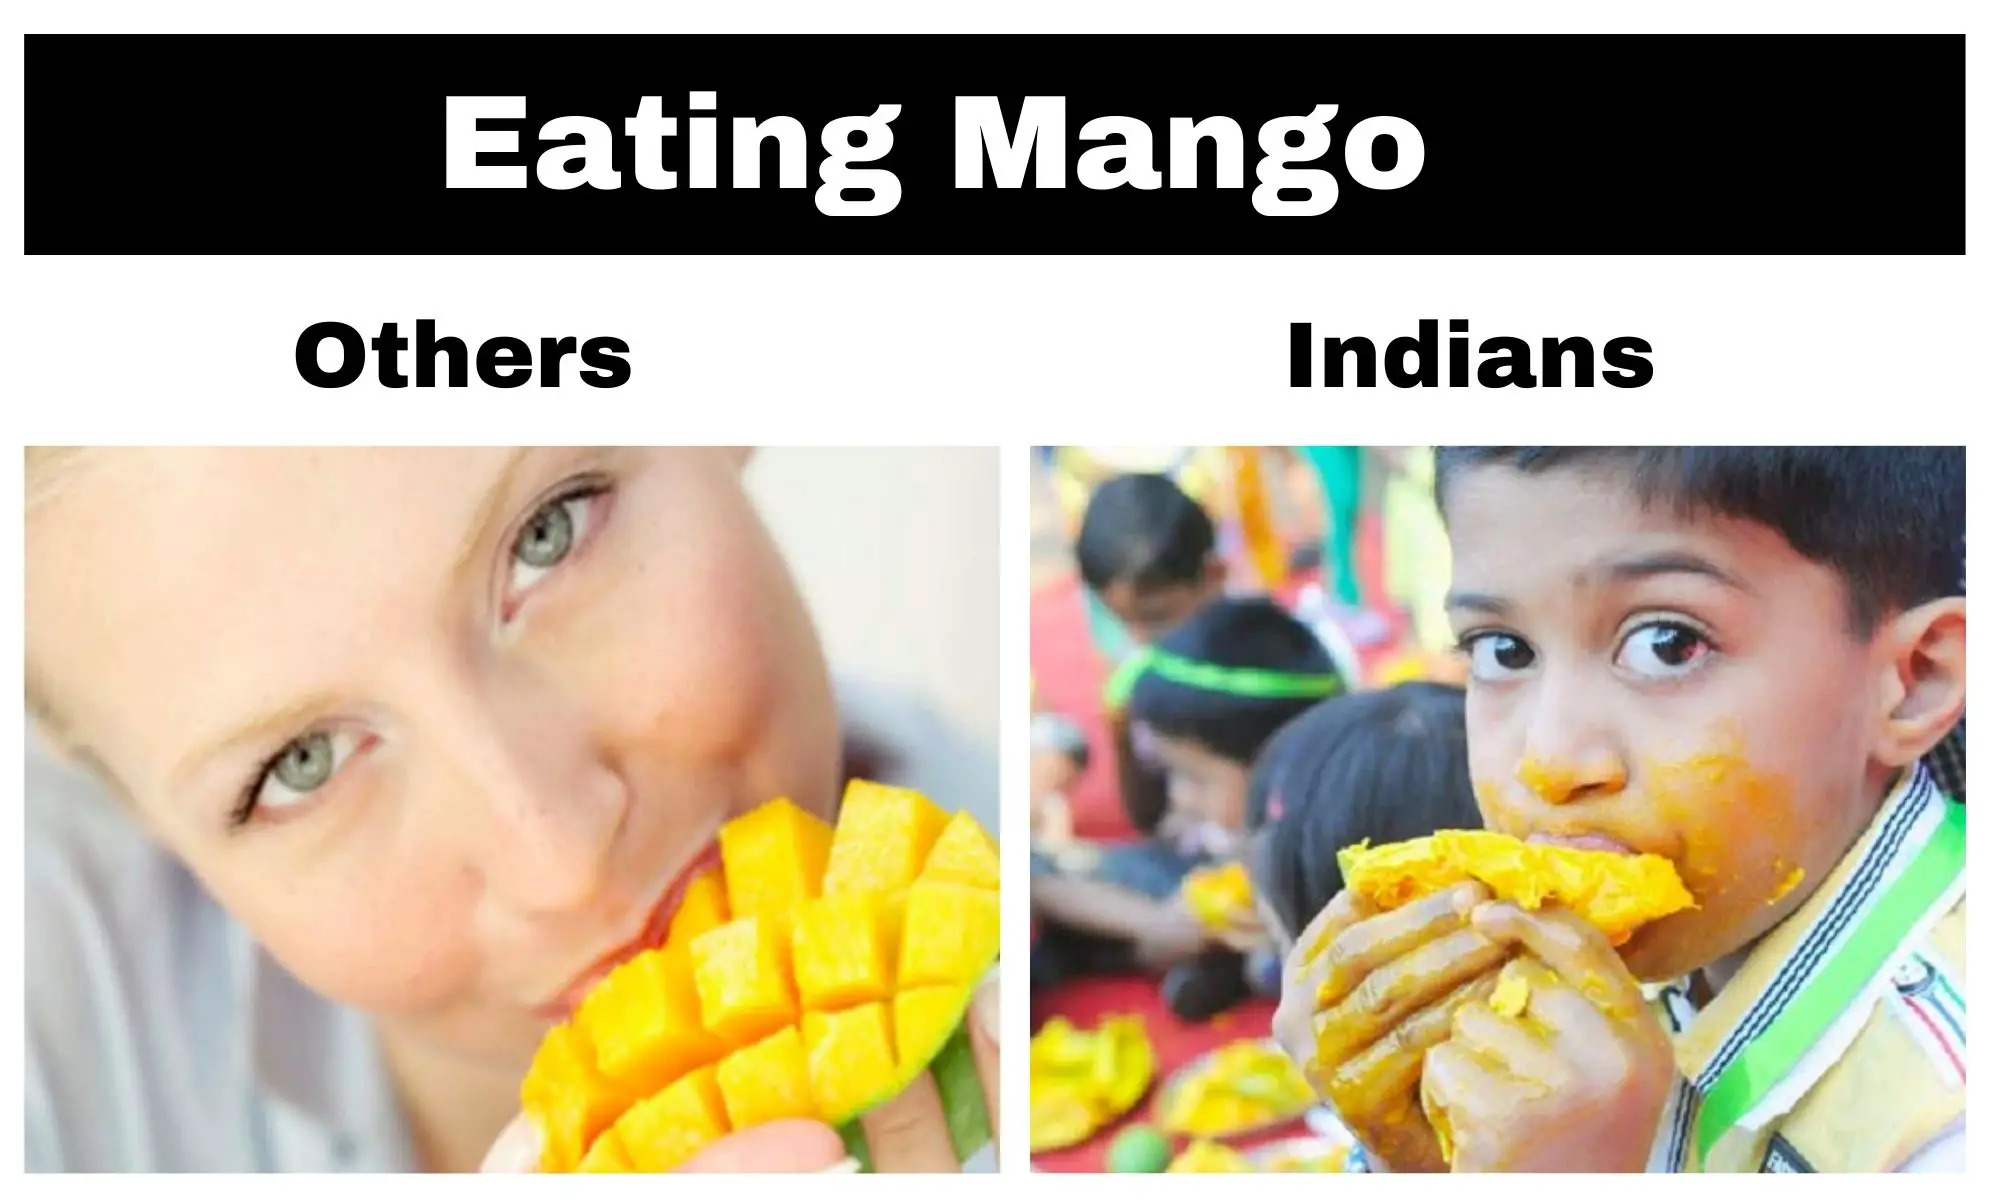 Eating Mango Meme on Indians